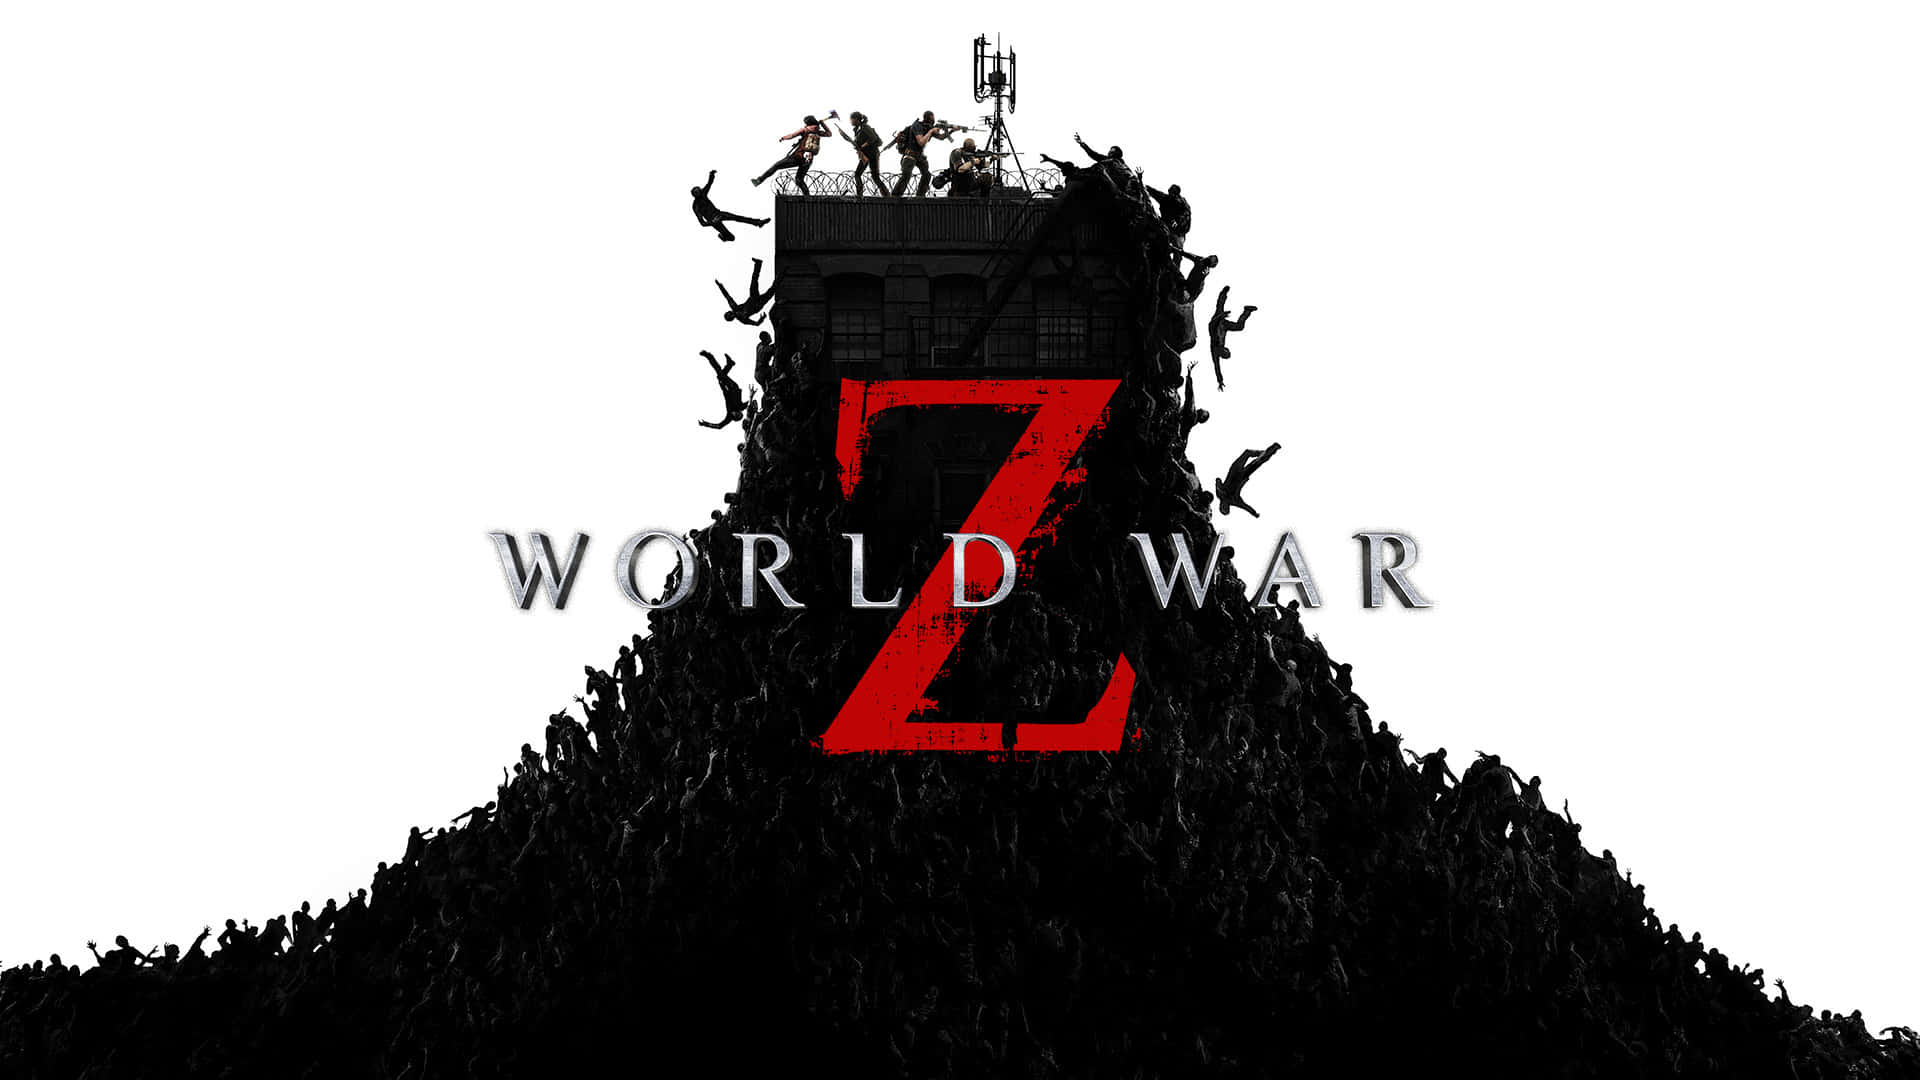 "Brave the Undead World War Z"